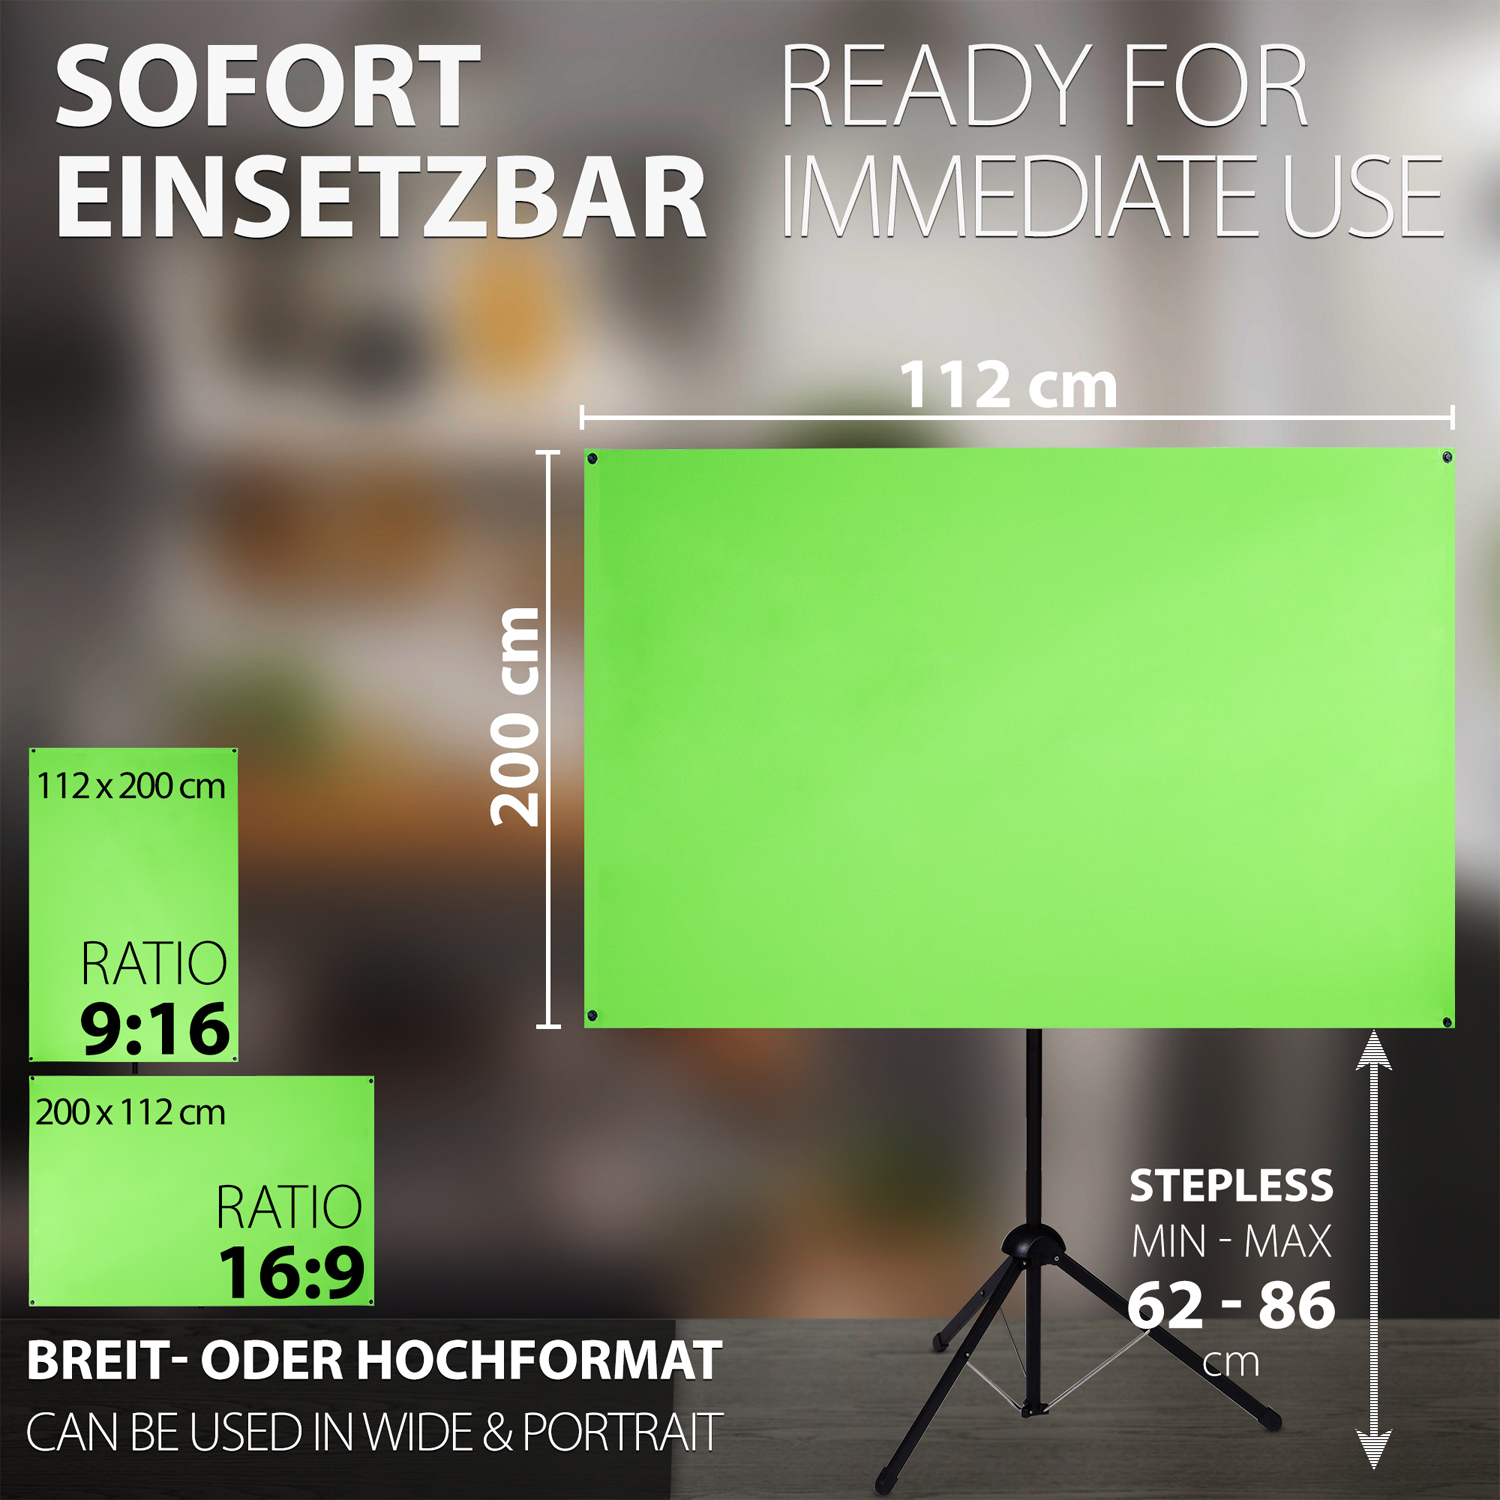 ESMART Expert 112 200 Green-Screen Ultralightweight 90\